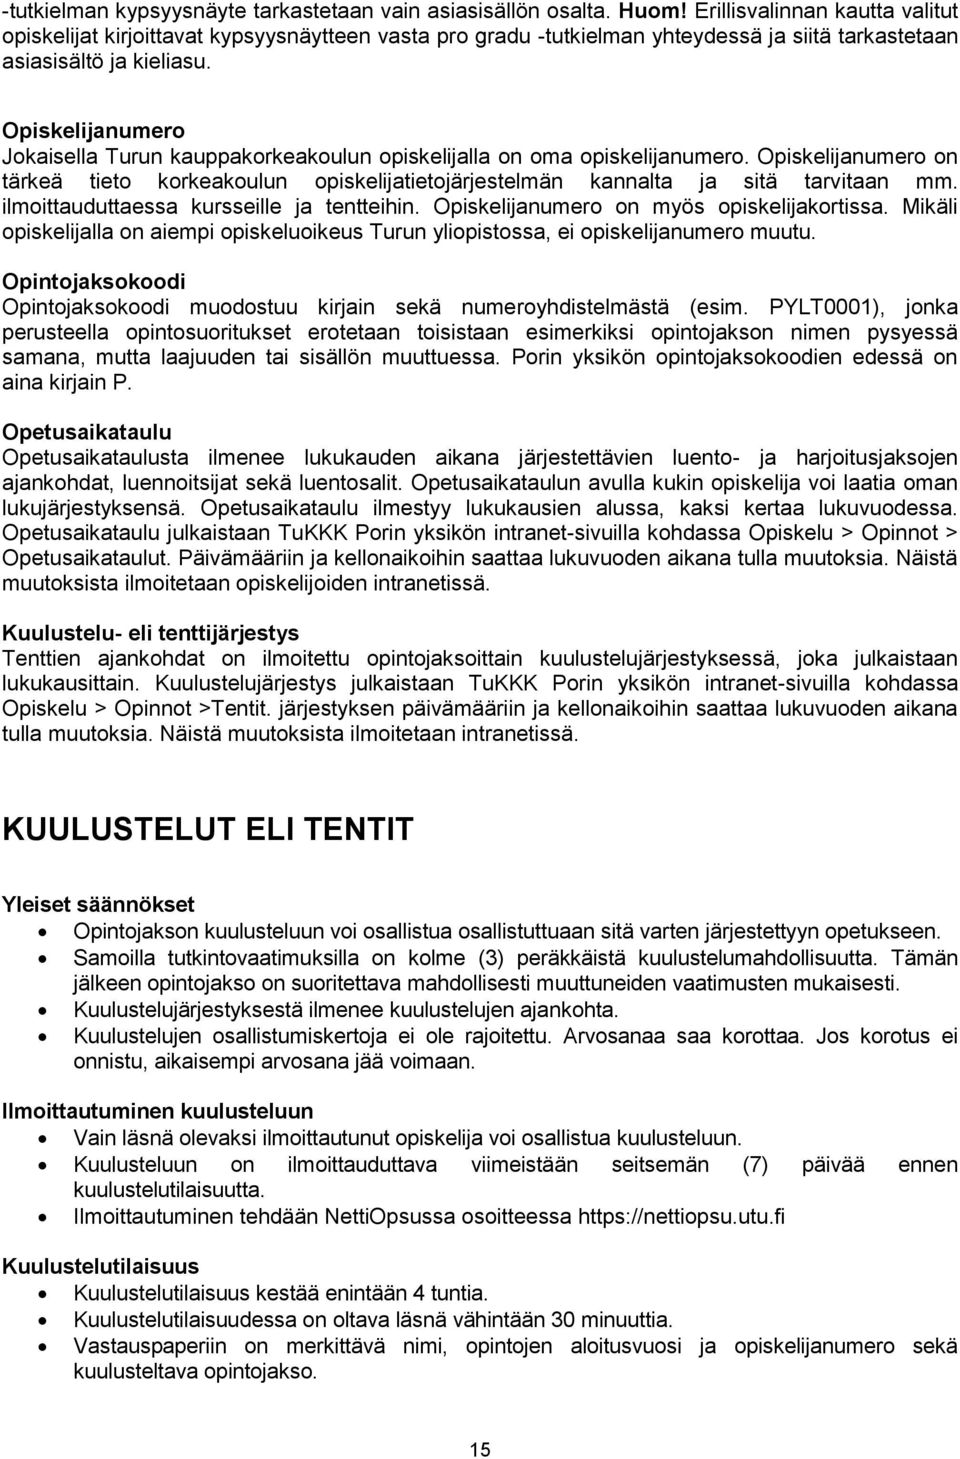 Opiskelijanumero Jokaisella Turun kauppakorkeakoulun opiskelijalla on oma opiskelijanumero. Opiskelijanumero on tärkeä tieto korkeakoulun opiskelijatietojärjestelmän kannalta ja sitä tarvitaan mm.